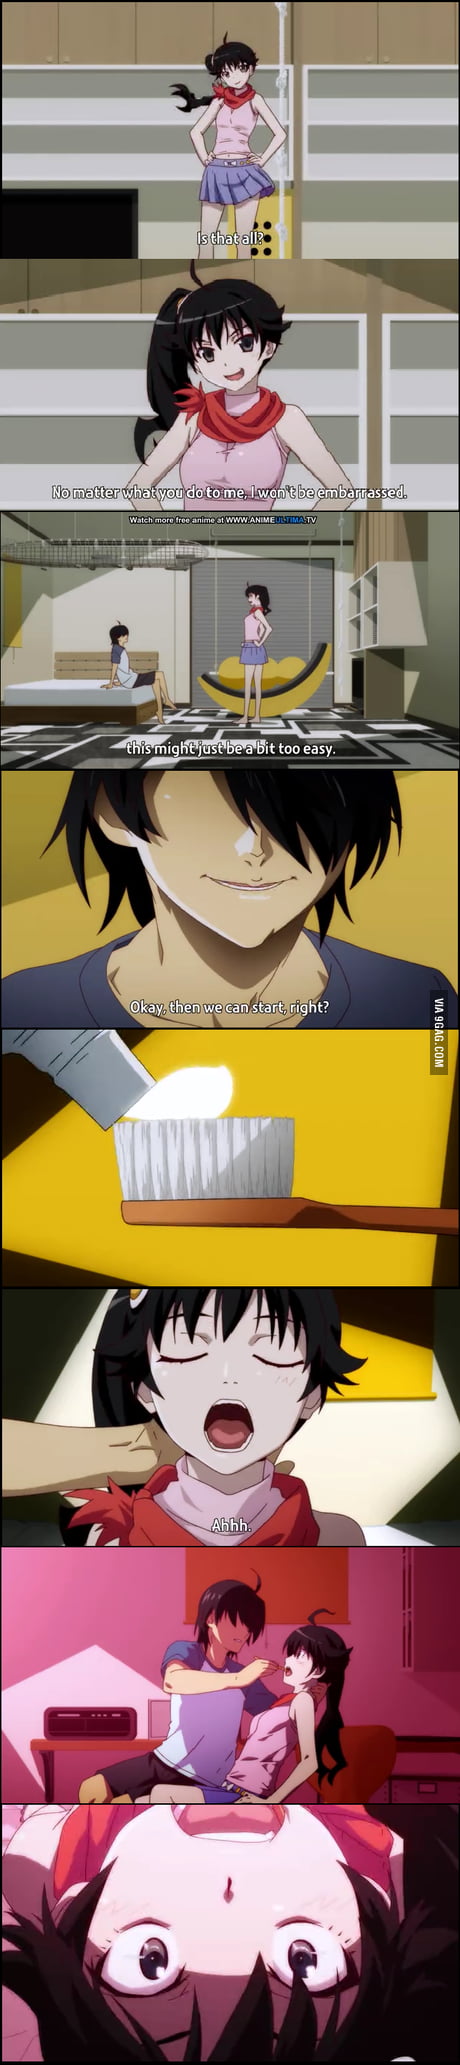 Featured image of post Anime Toothbrush Meme Share karya mememu dengan menambahkan hastag memeanime mau buat meme